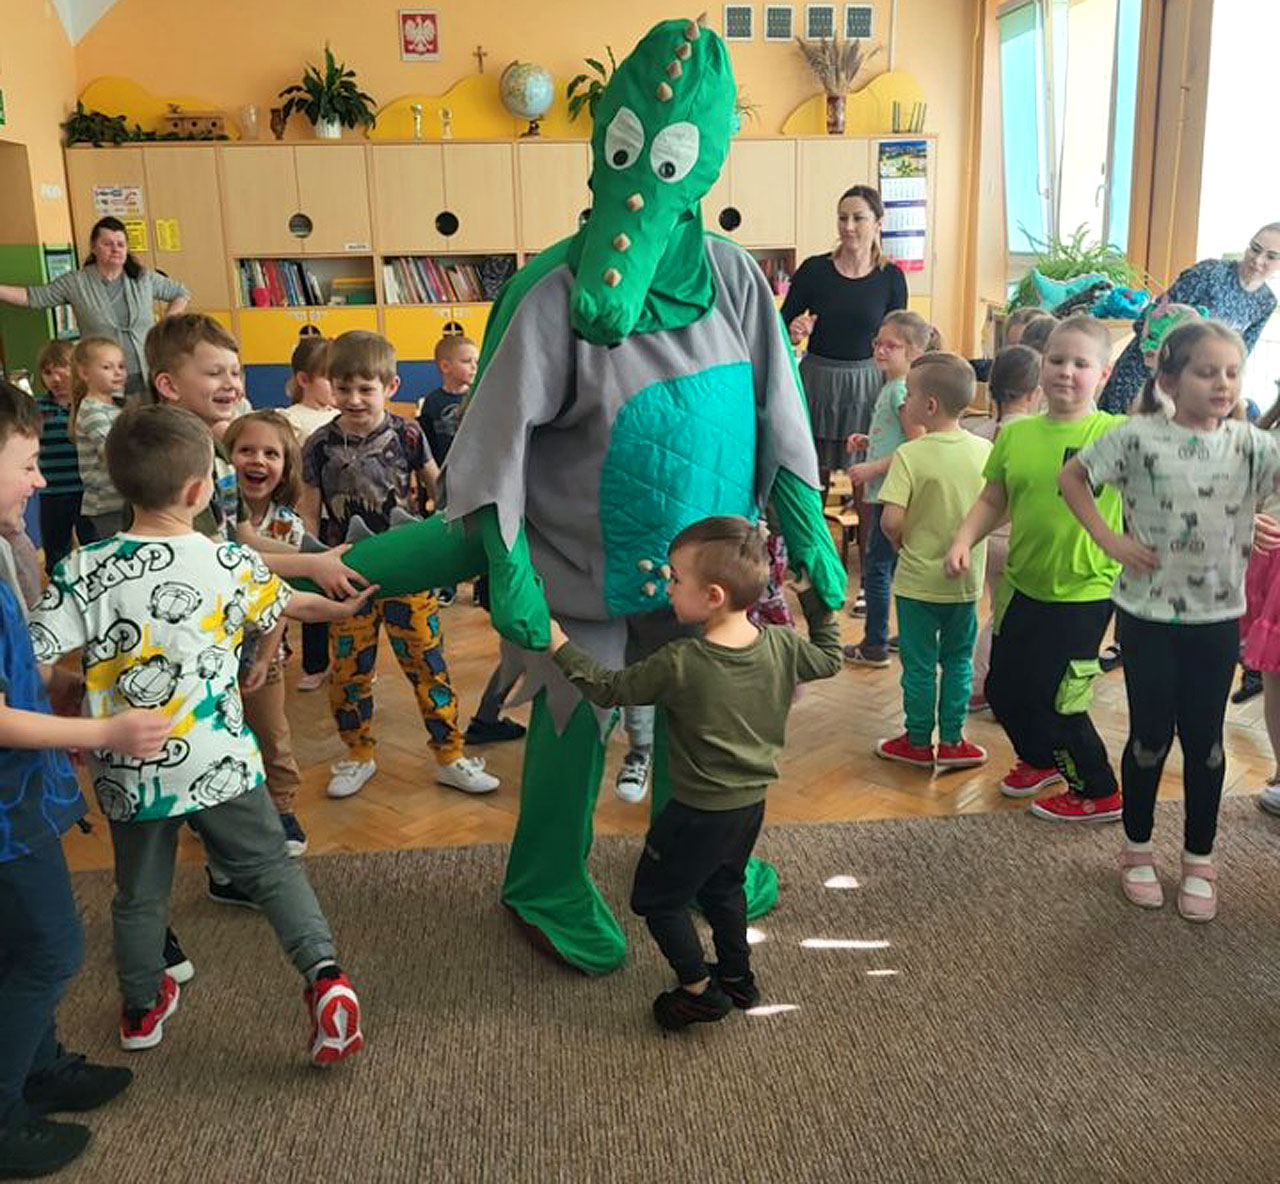 Dinoświęto u Hałabały! Przedszkolaki z Turku bawiły się z dinozaurami - fot.: Przedszkole Samorządowe nr 8 w Turku